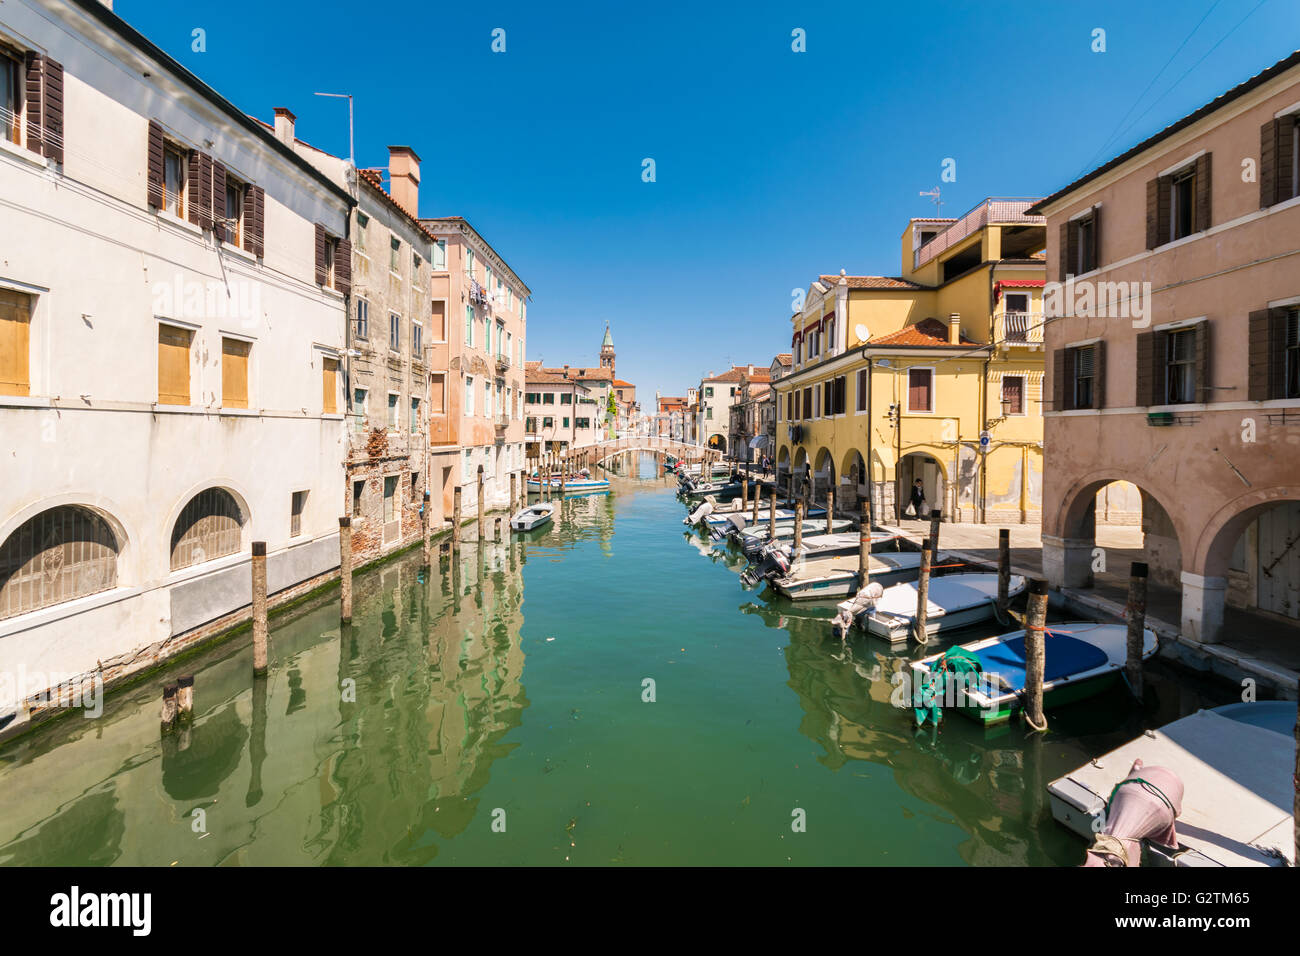 Charakteristischen Kanal in Chioggia, Lagune von Venedig, Italien. Stockfoto